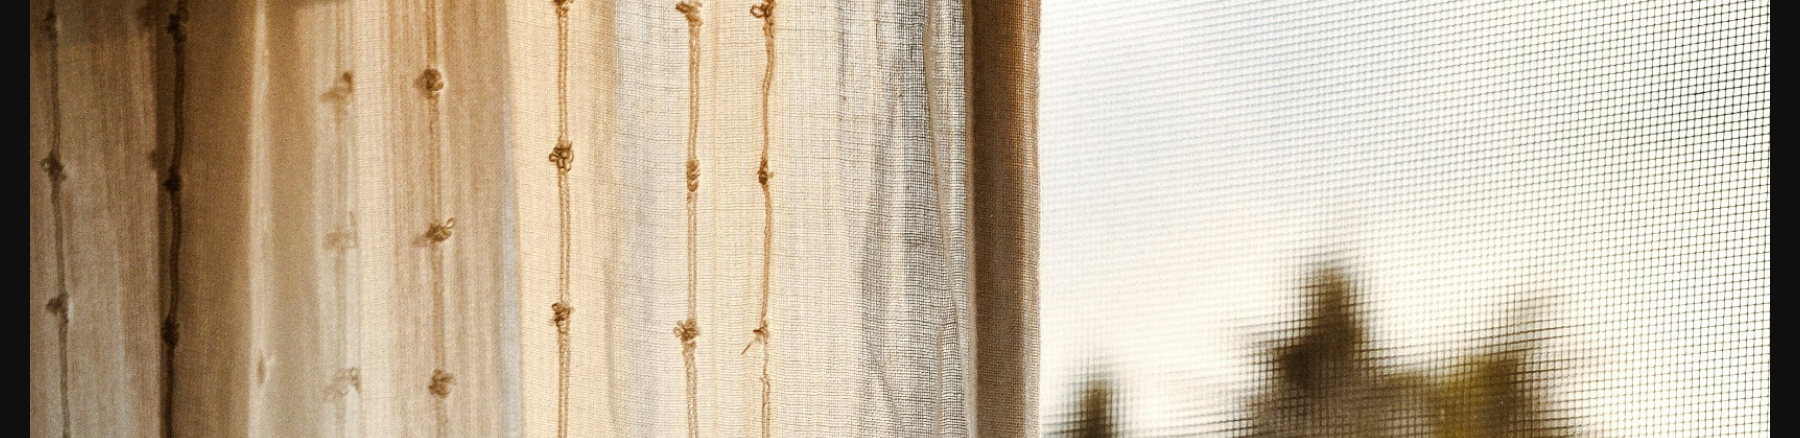 Eterea. Текстильный дизайн интерьера — Изображение №10 — Интерфейсы, Анимация на Dprofile